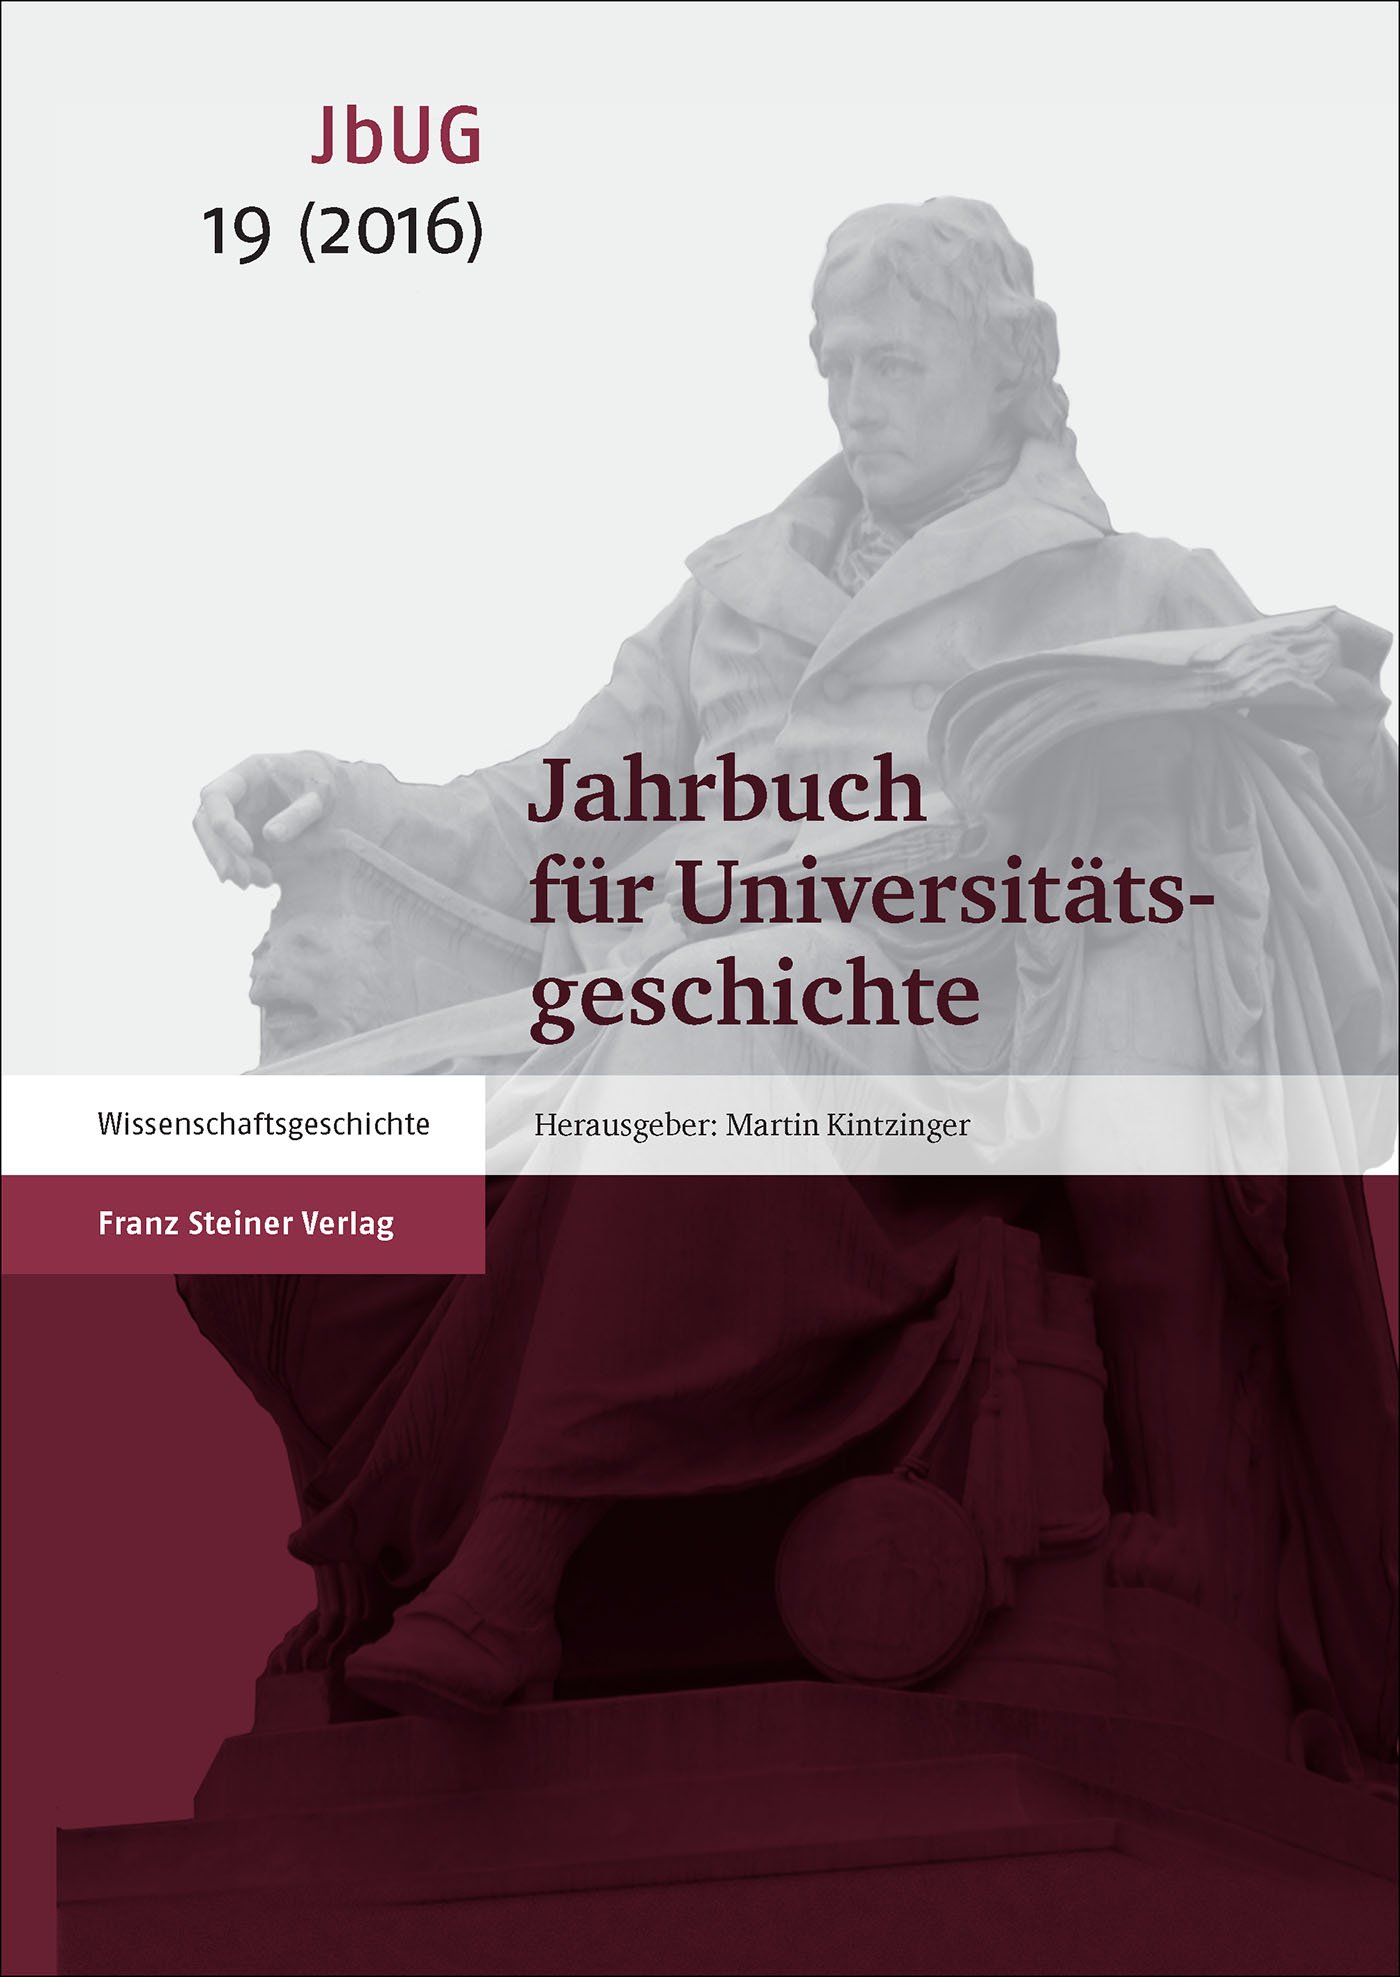 Jahrbuch für Universitätsgeschichte 19 (2016)